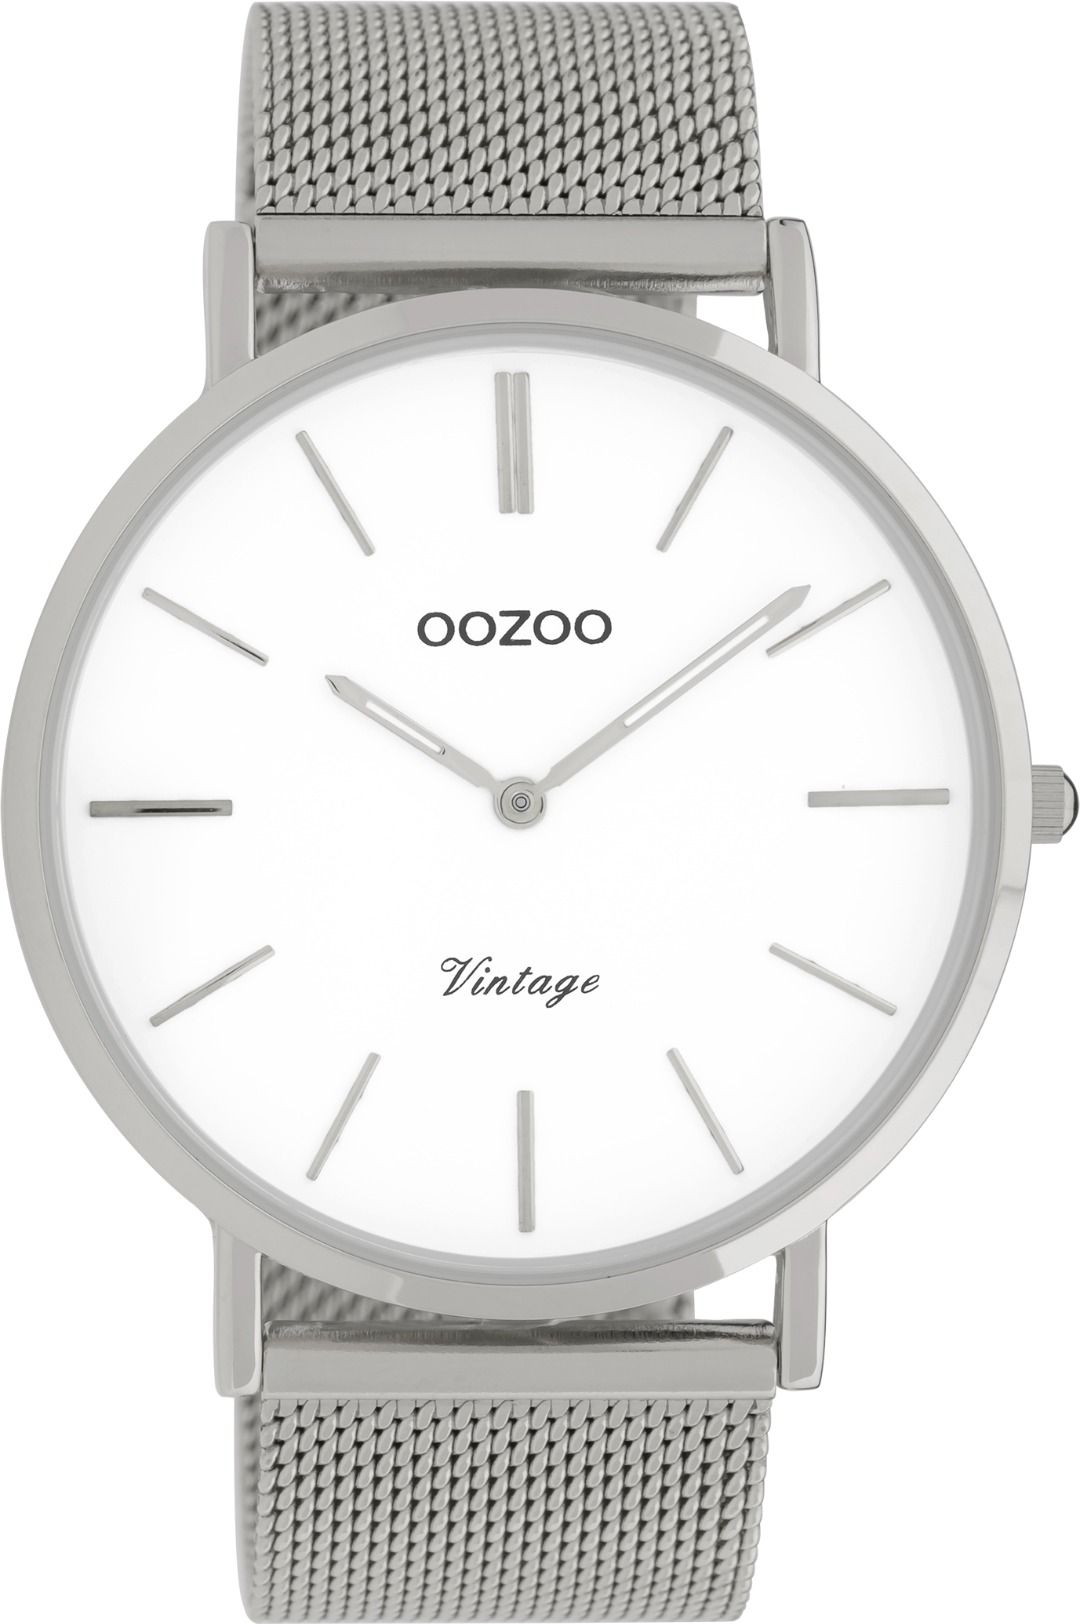 OOZOO Vintage 9900 - 44mm